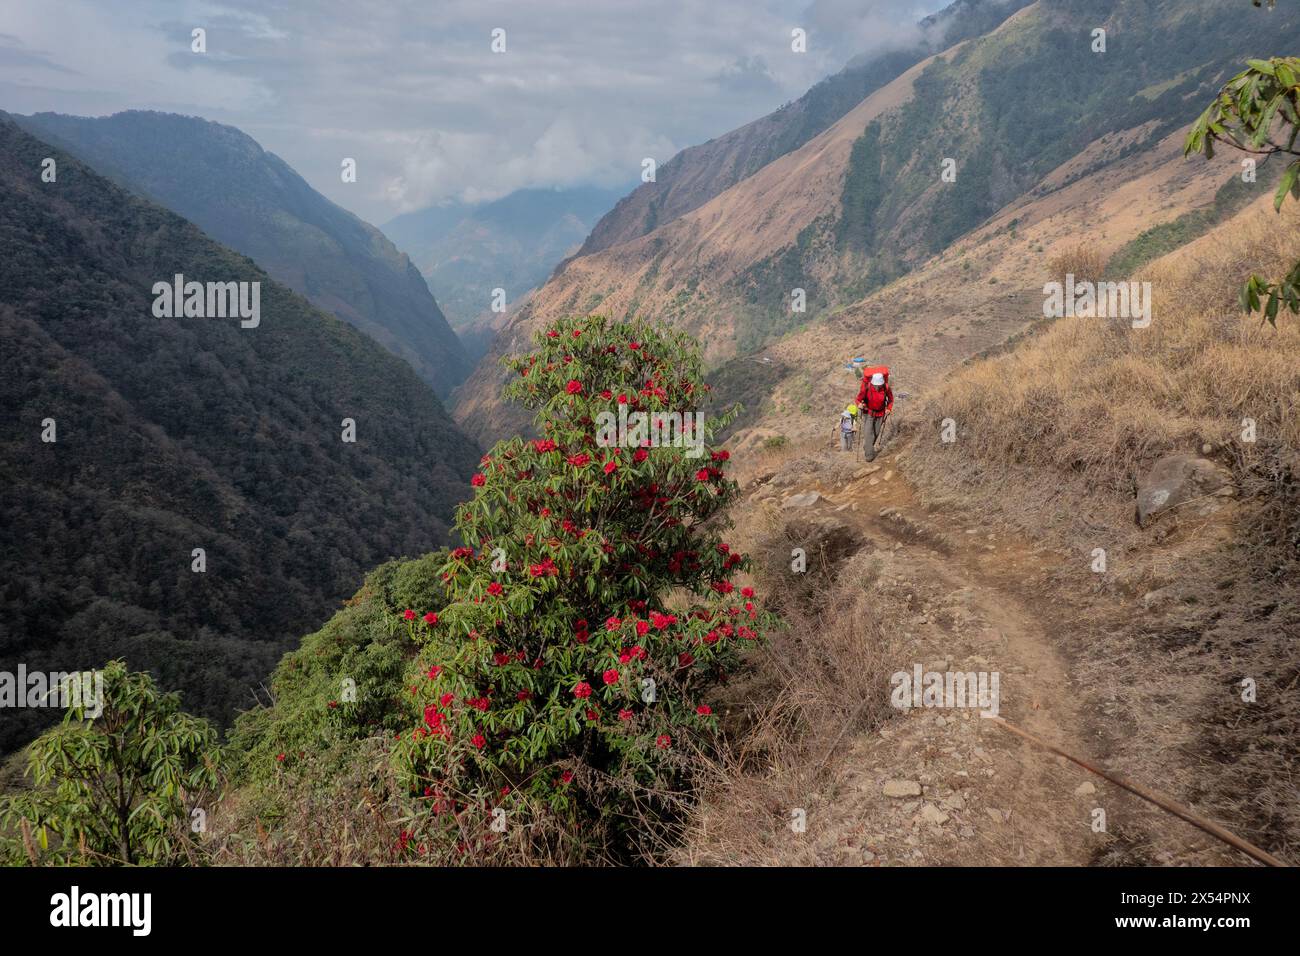 Rhododendron blooms on the way to Kangchanjunga Base Camp, Sekethum, Nepal Stock Photo